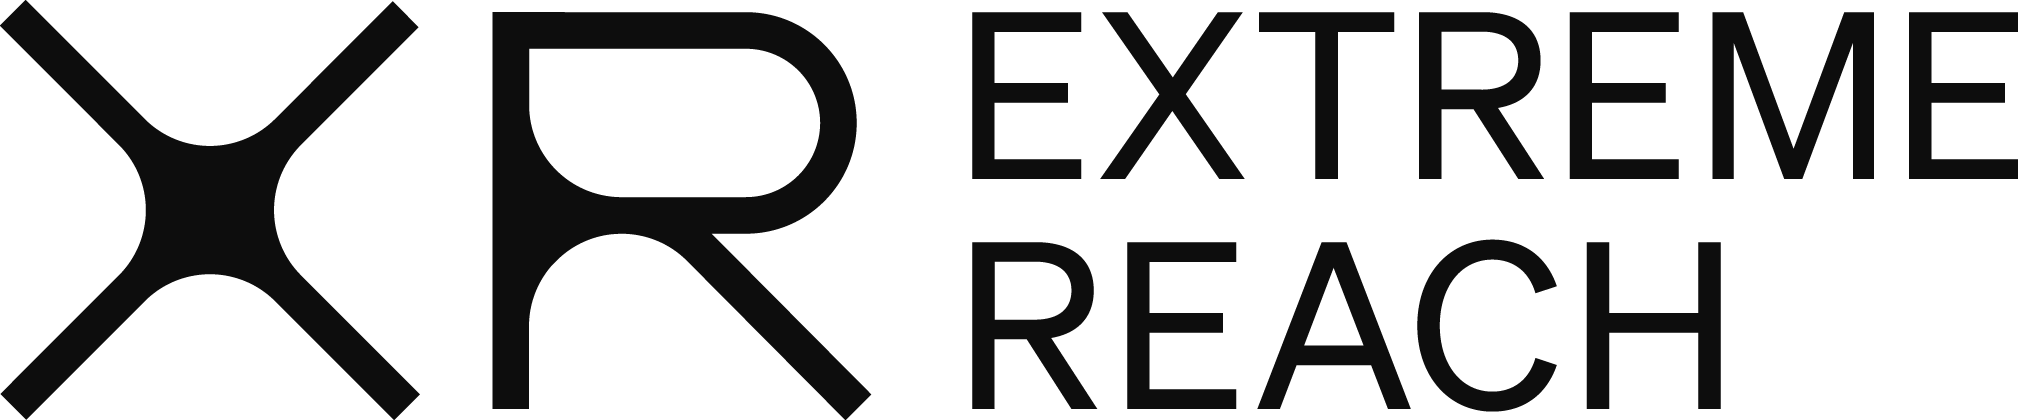 XR Extreme Reach